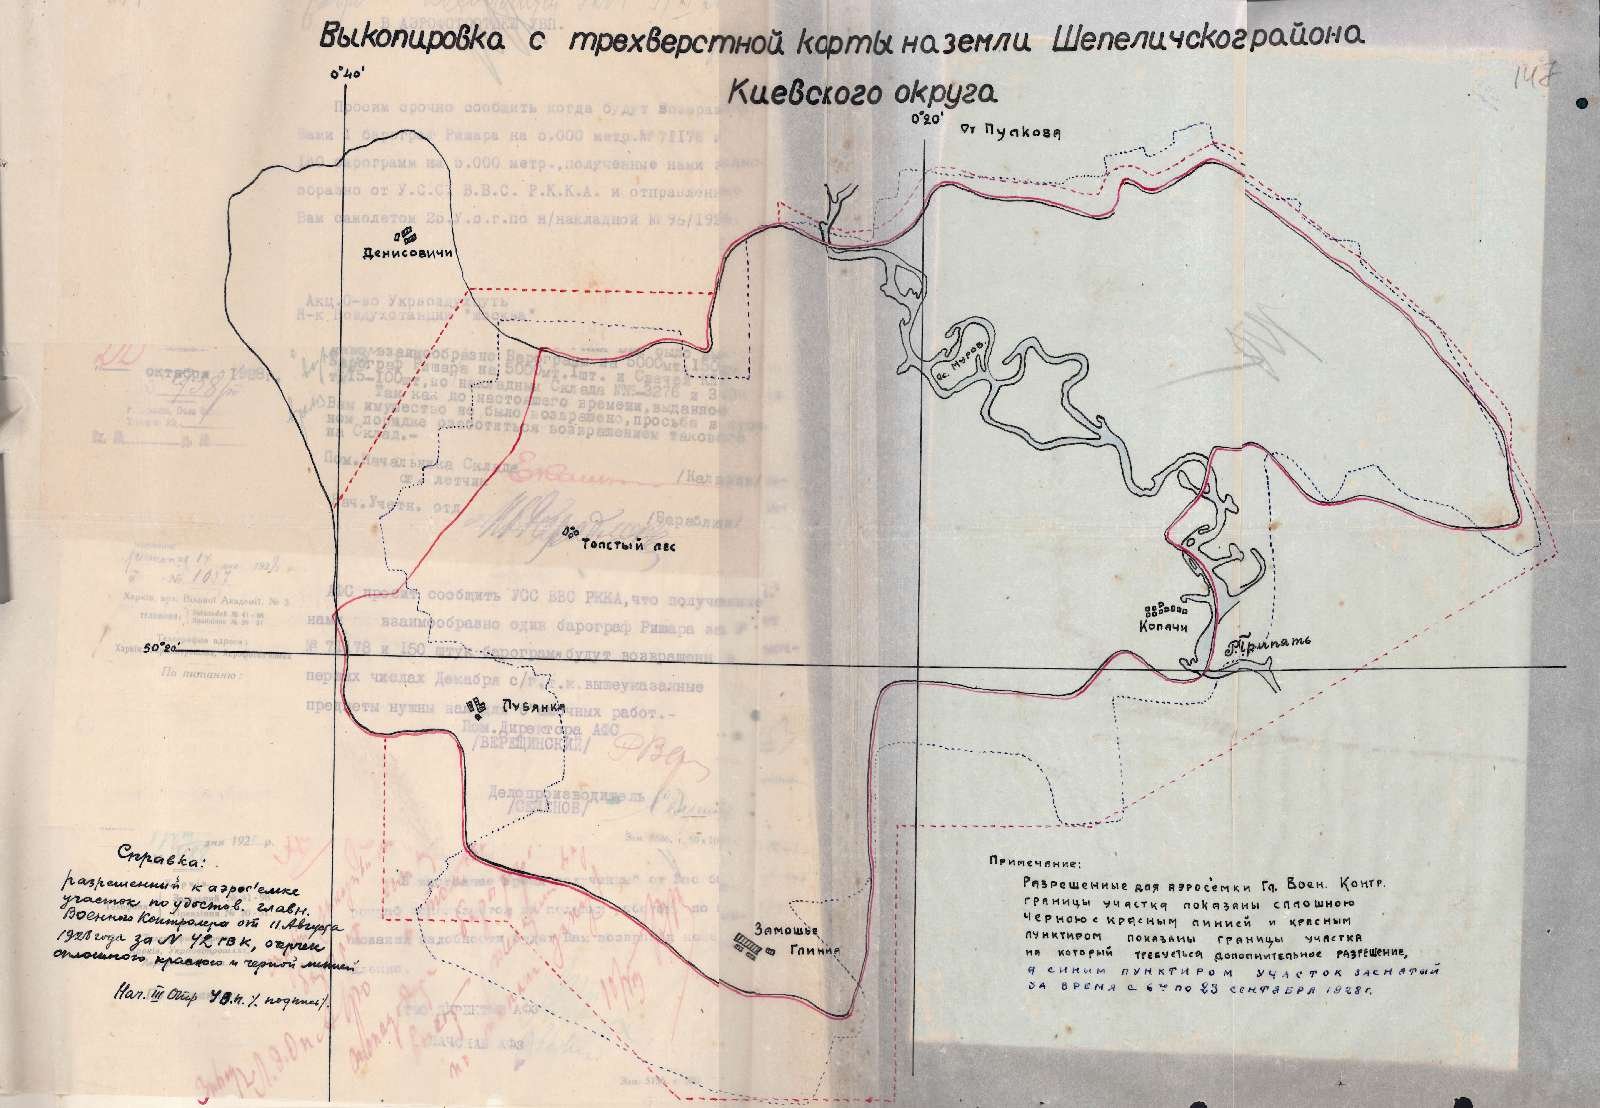 Мапа на землі Шепелицького району Київського округу. Жовтень 1928 р.